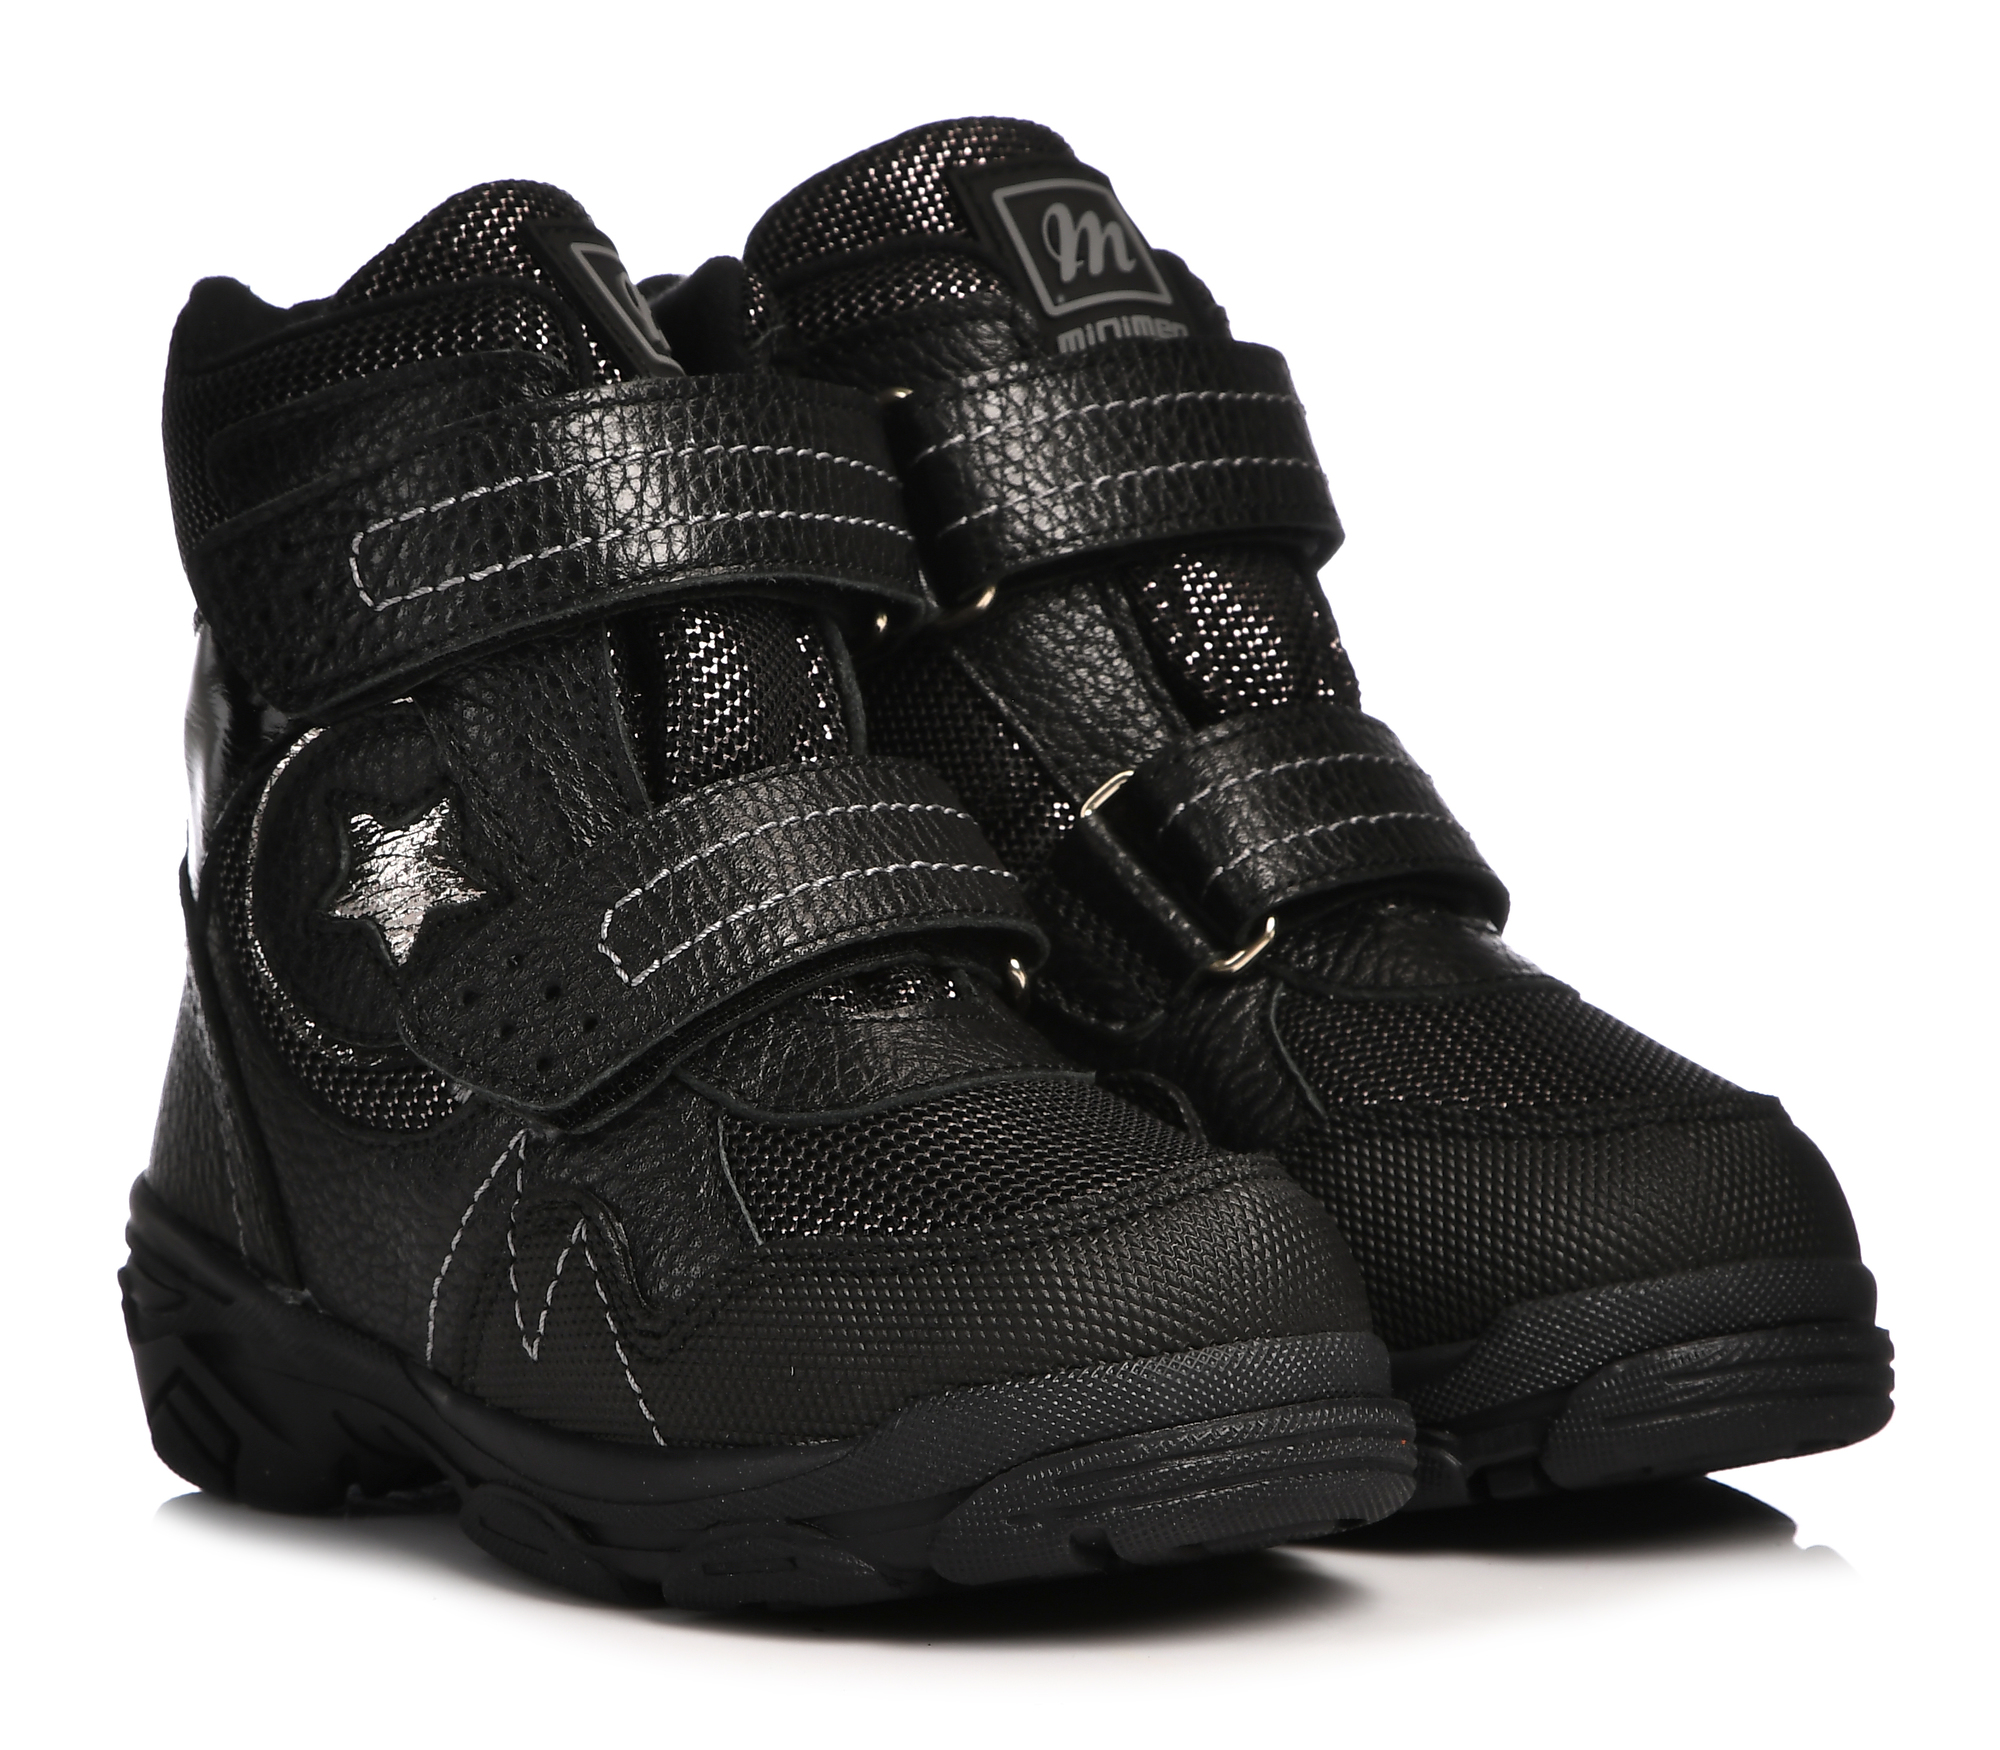 Ботинки Minimen для девочек, чёрные, размер 26, 2658-63-23B-05 ботинки minimen для девочек сиреневые размер 27 2658 63 23b 04